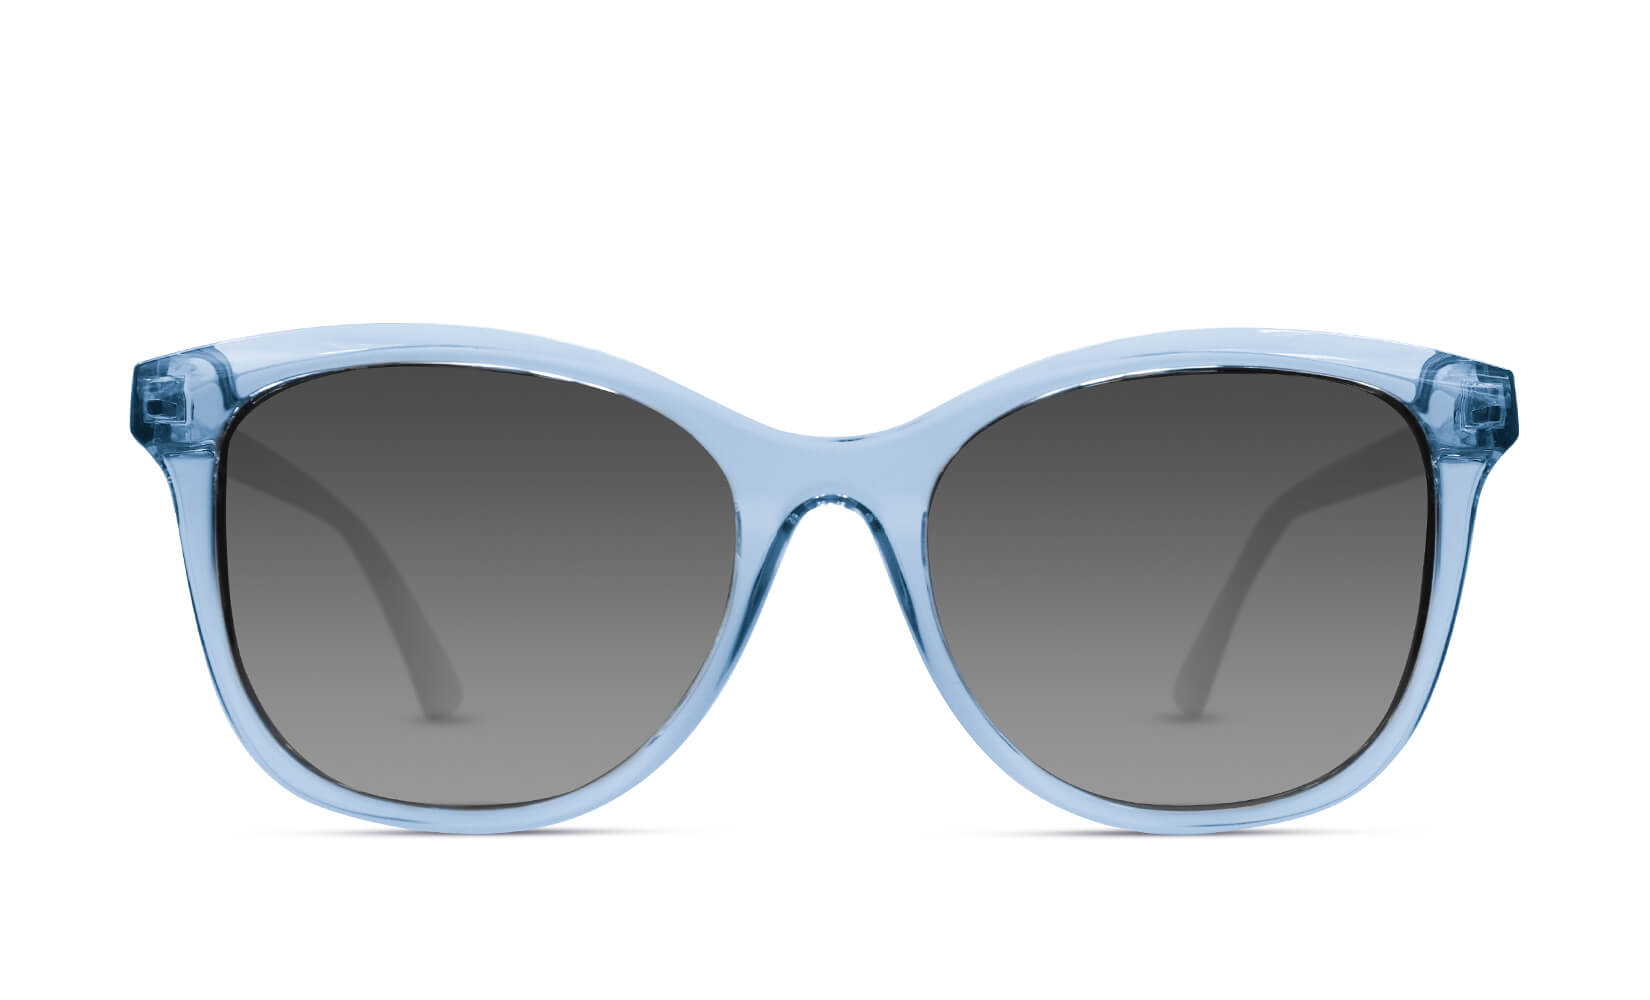 Polarized Kids Sunglasses, Stylish & Durable